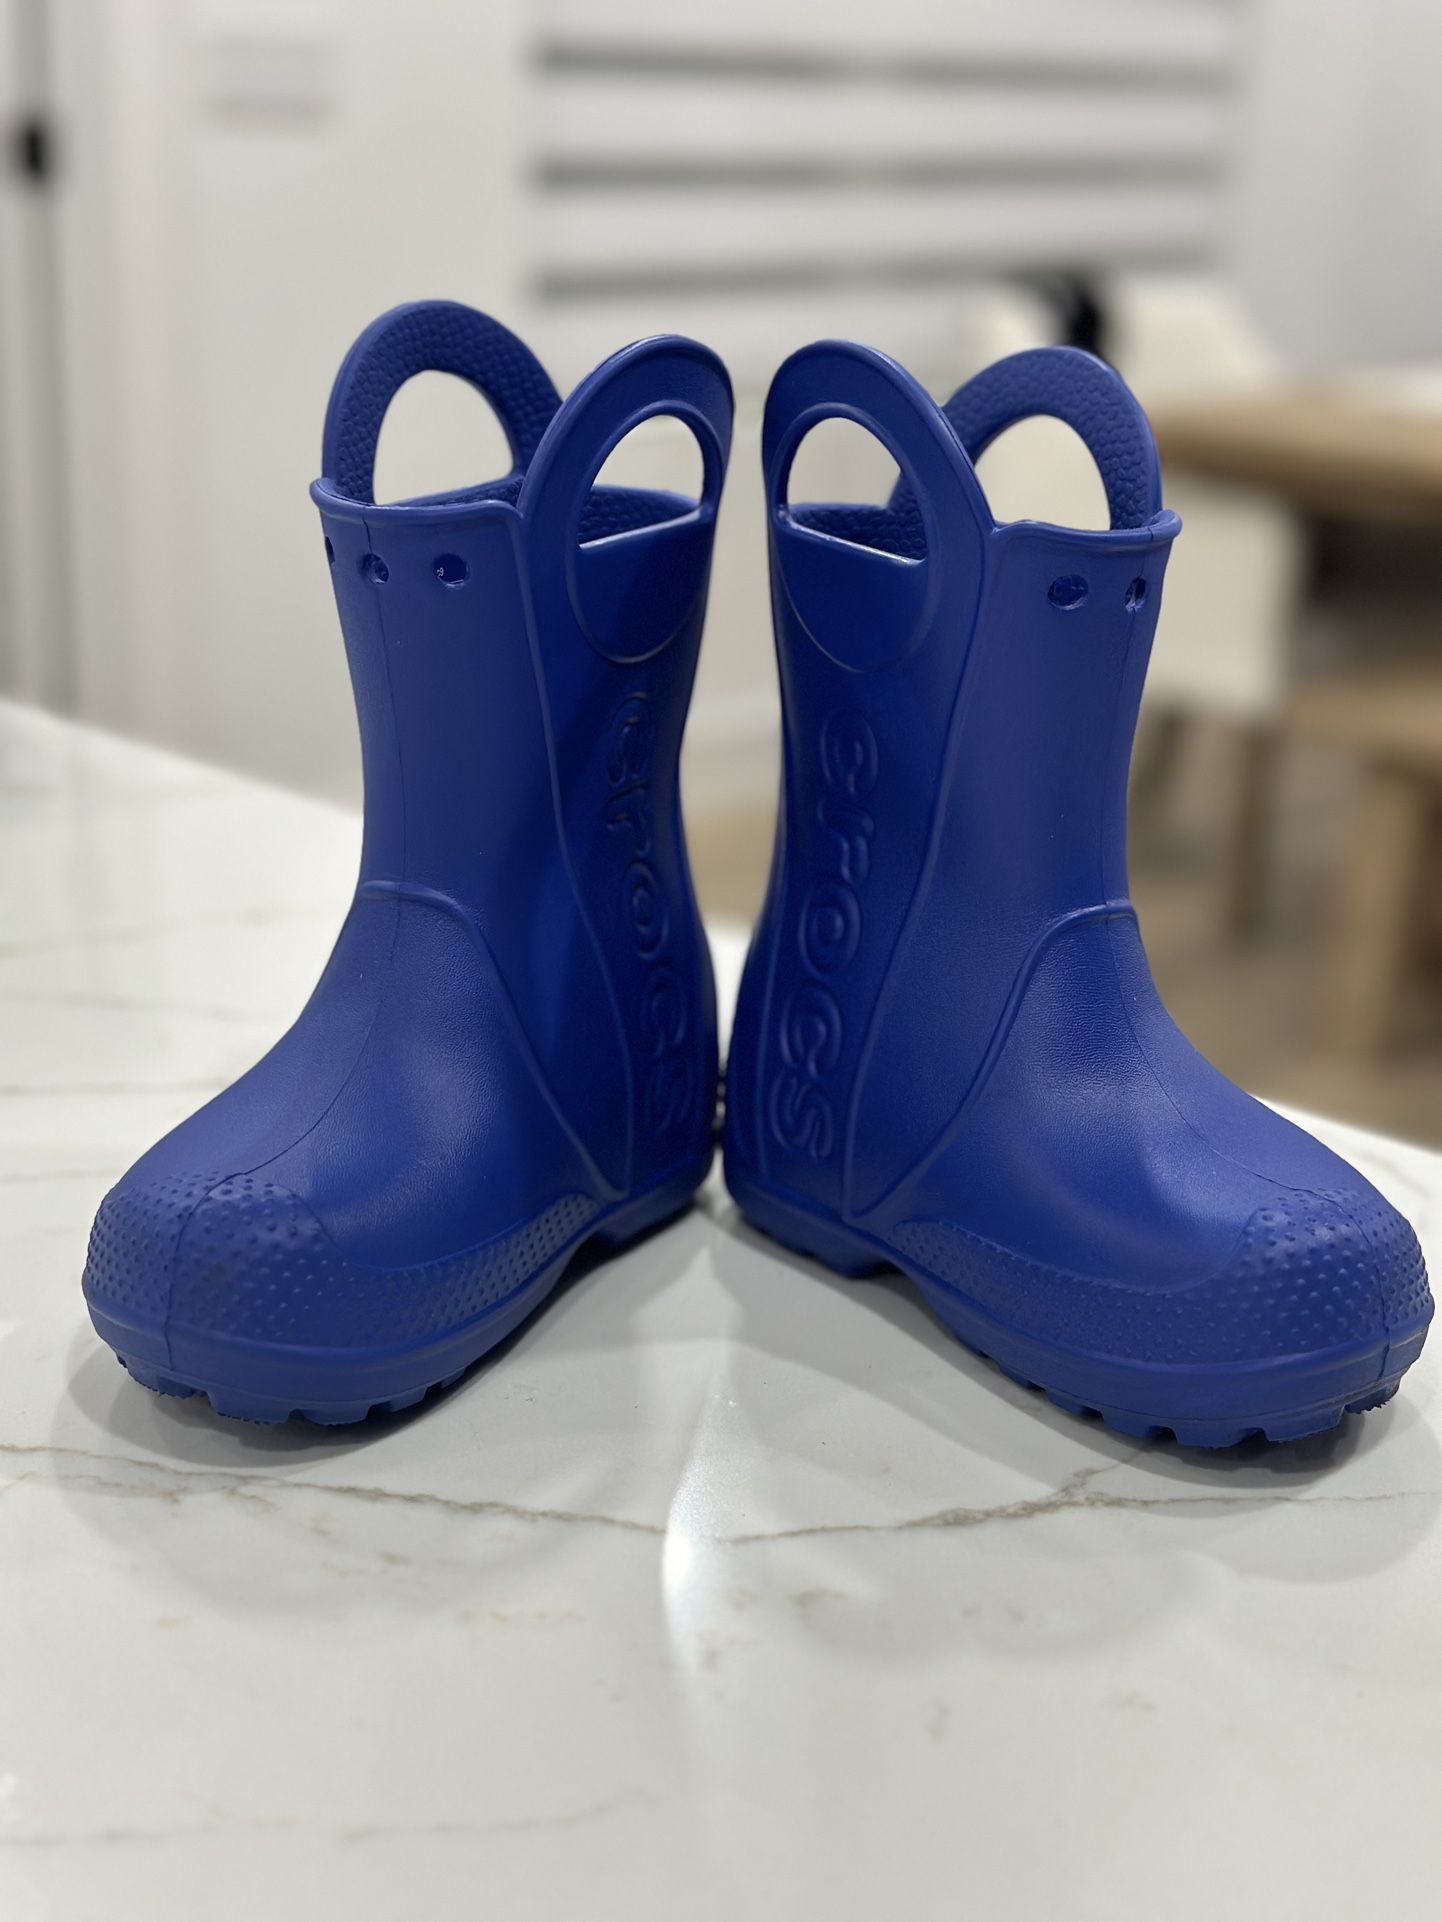 Crocs Rain Boots Like New Size C9